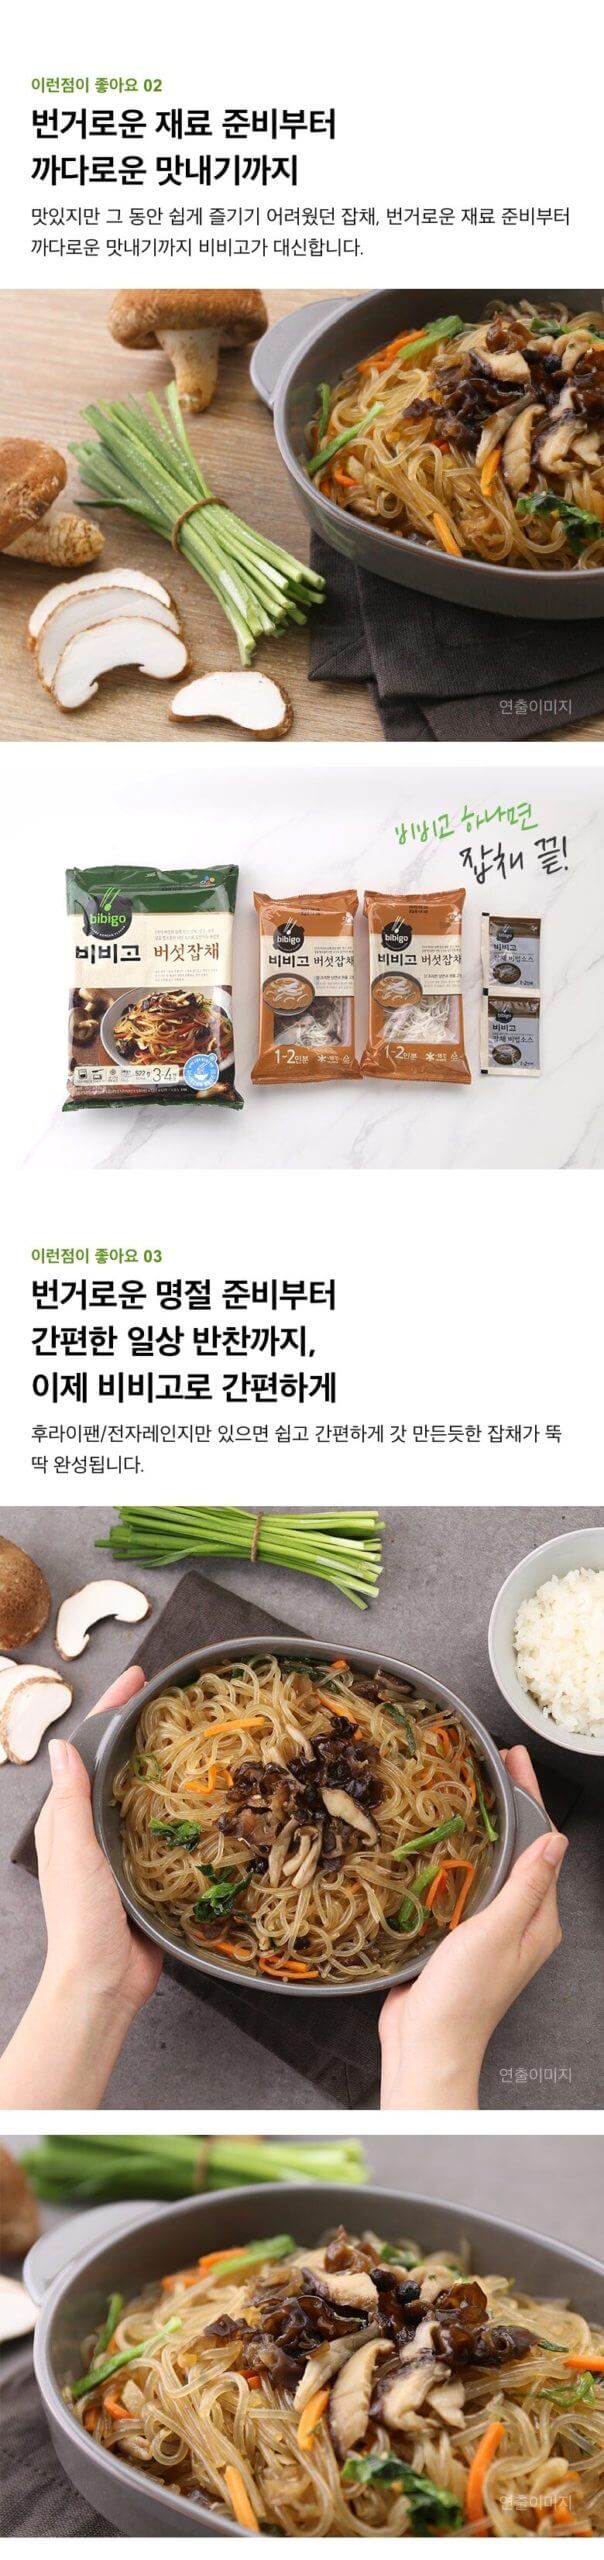 韓國食品-(유통기한 2024/6/19 까지) [CJ] 비비고 버섯잡채 522g